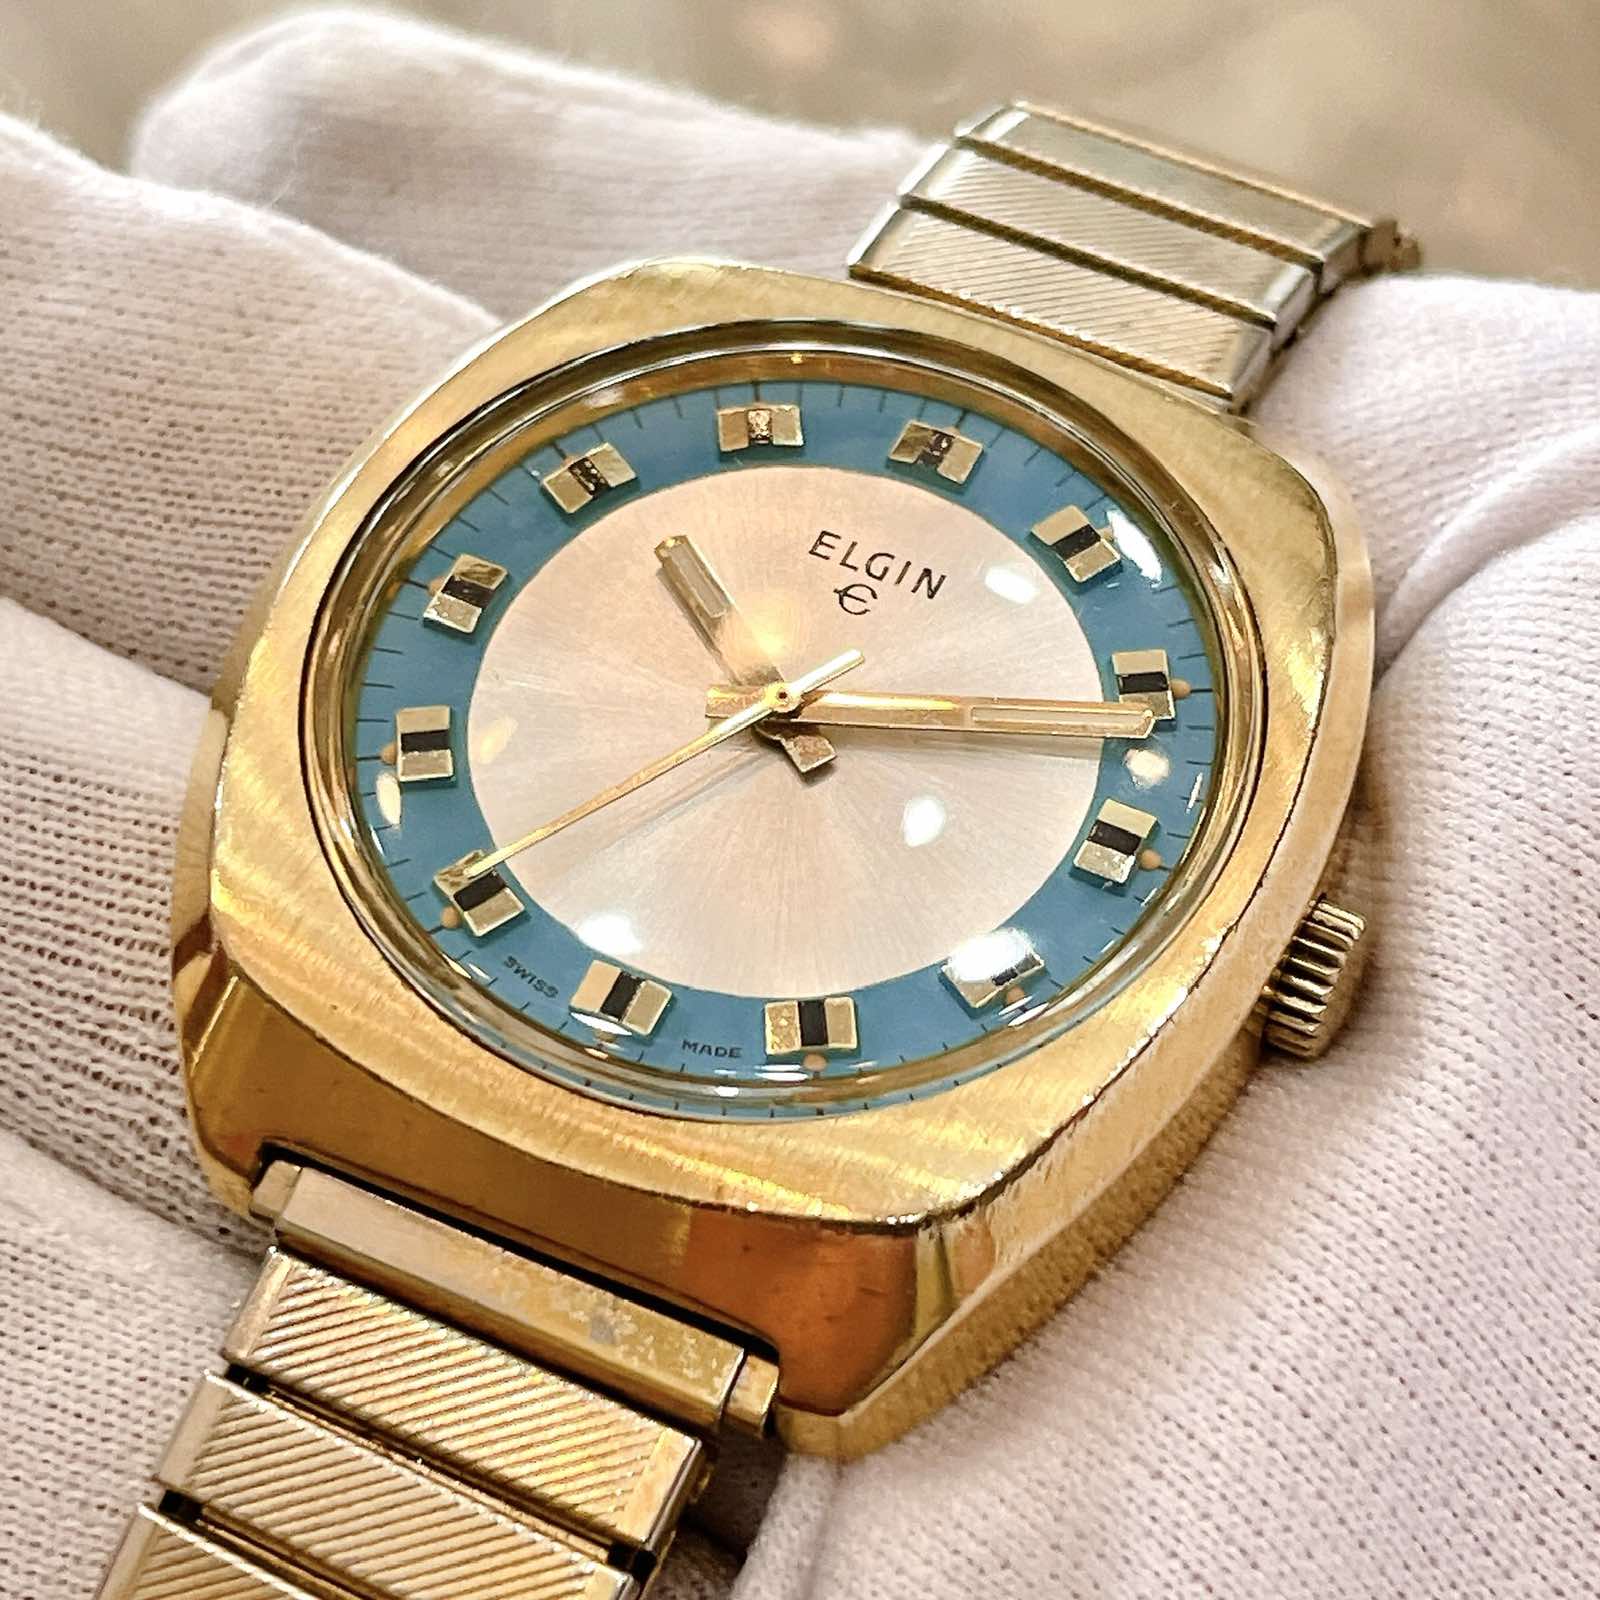 Đồng hồ cổ ELGIN lên dây lacke vàng 18k chính hãng Thụy Sỹ